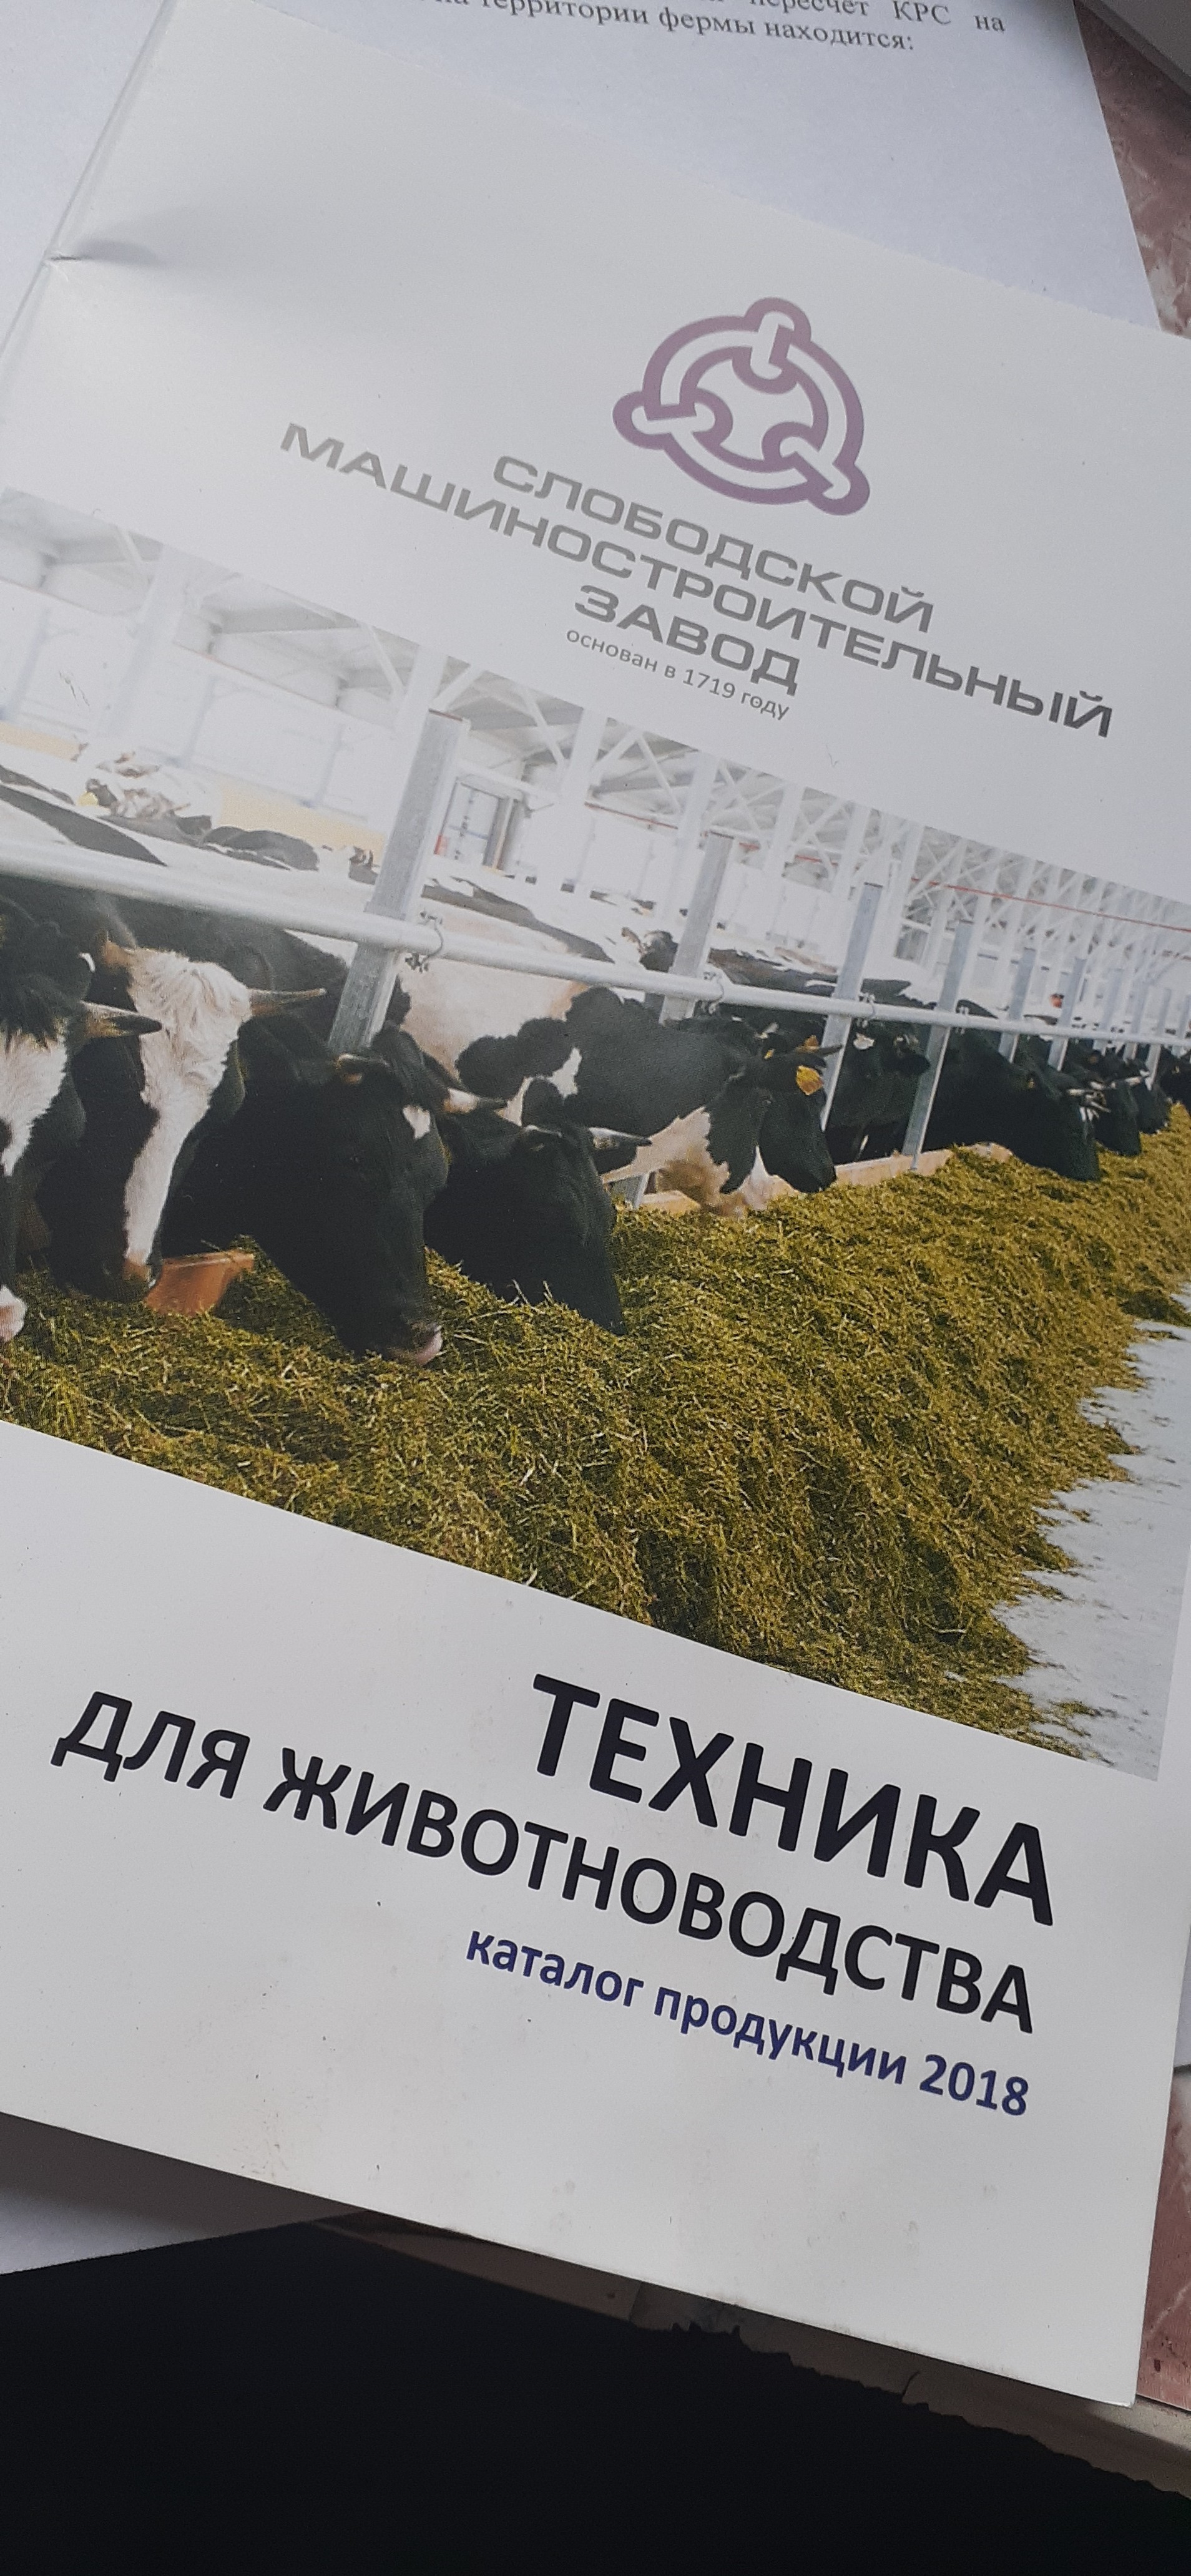 Farmer's Diary. Where to begin - My, Сельское хозяйство, Ground squirrel farmer, Longpost